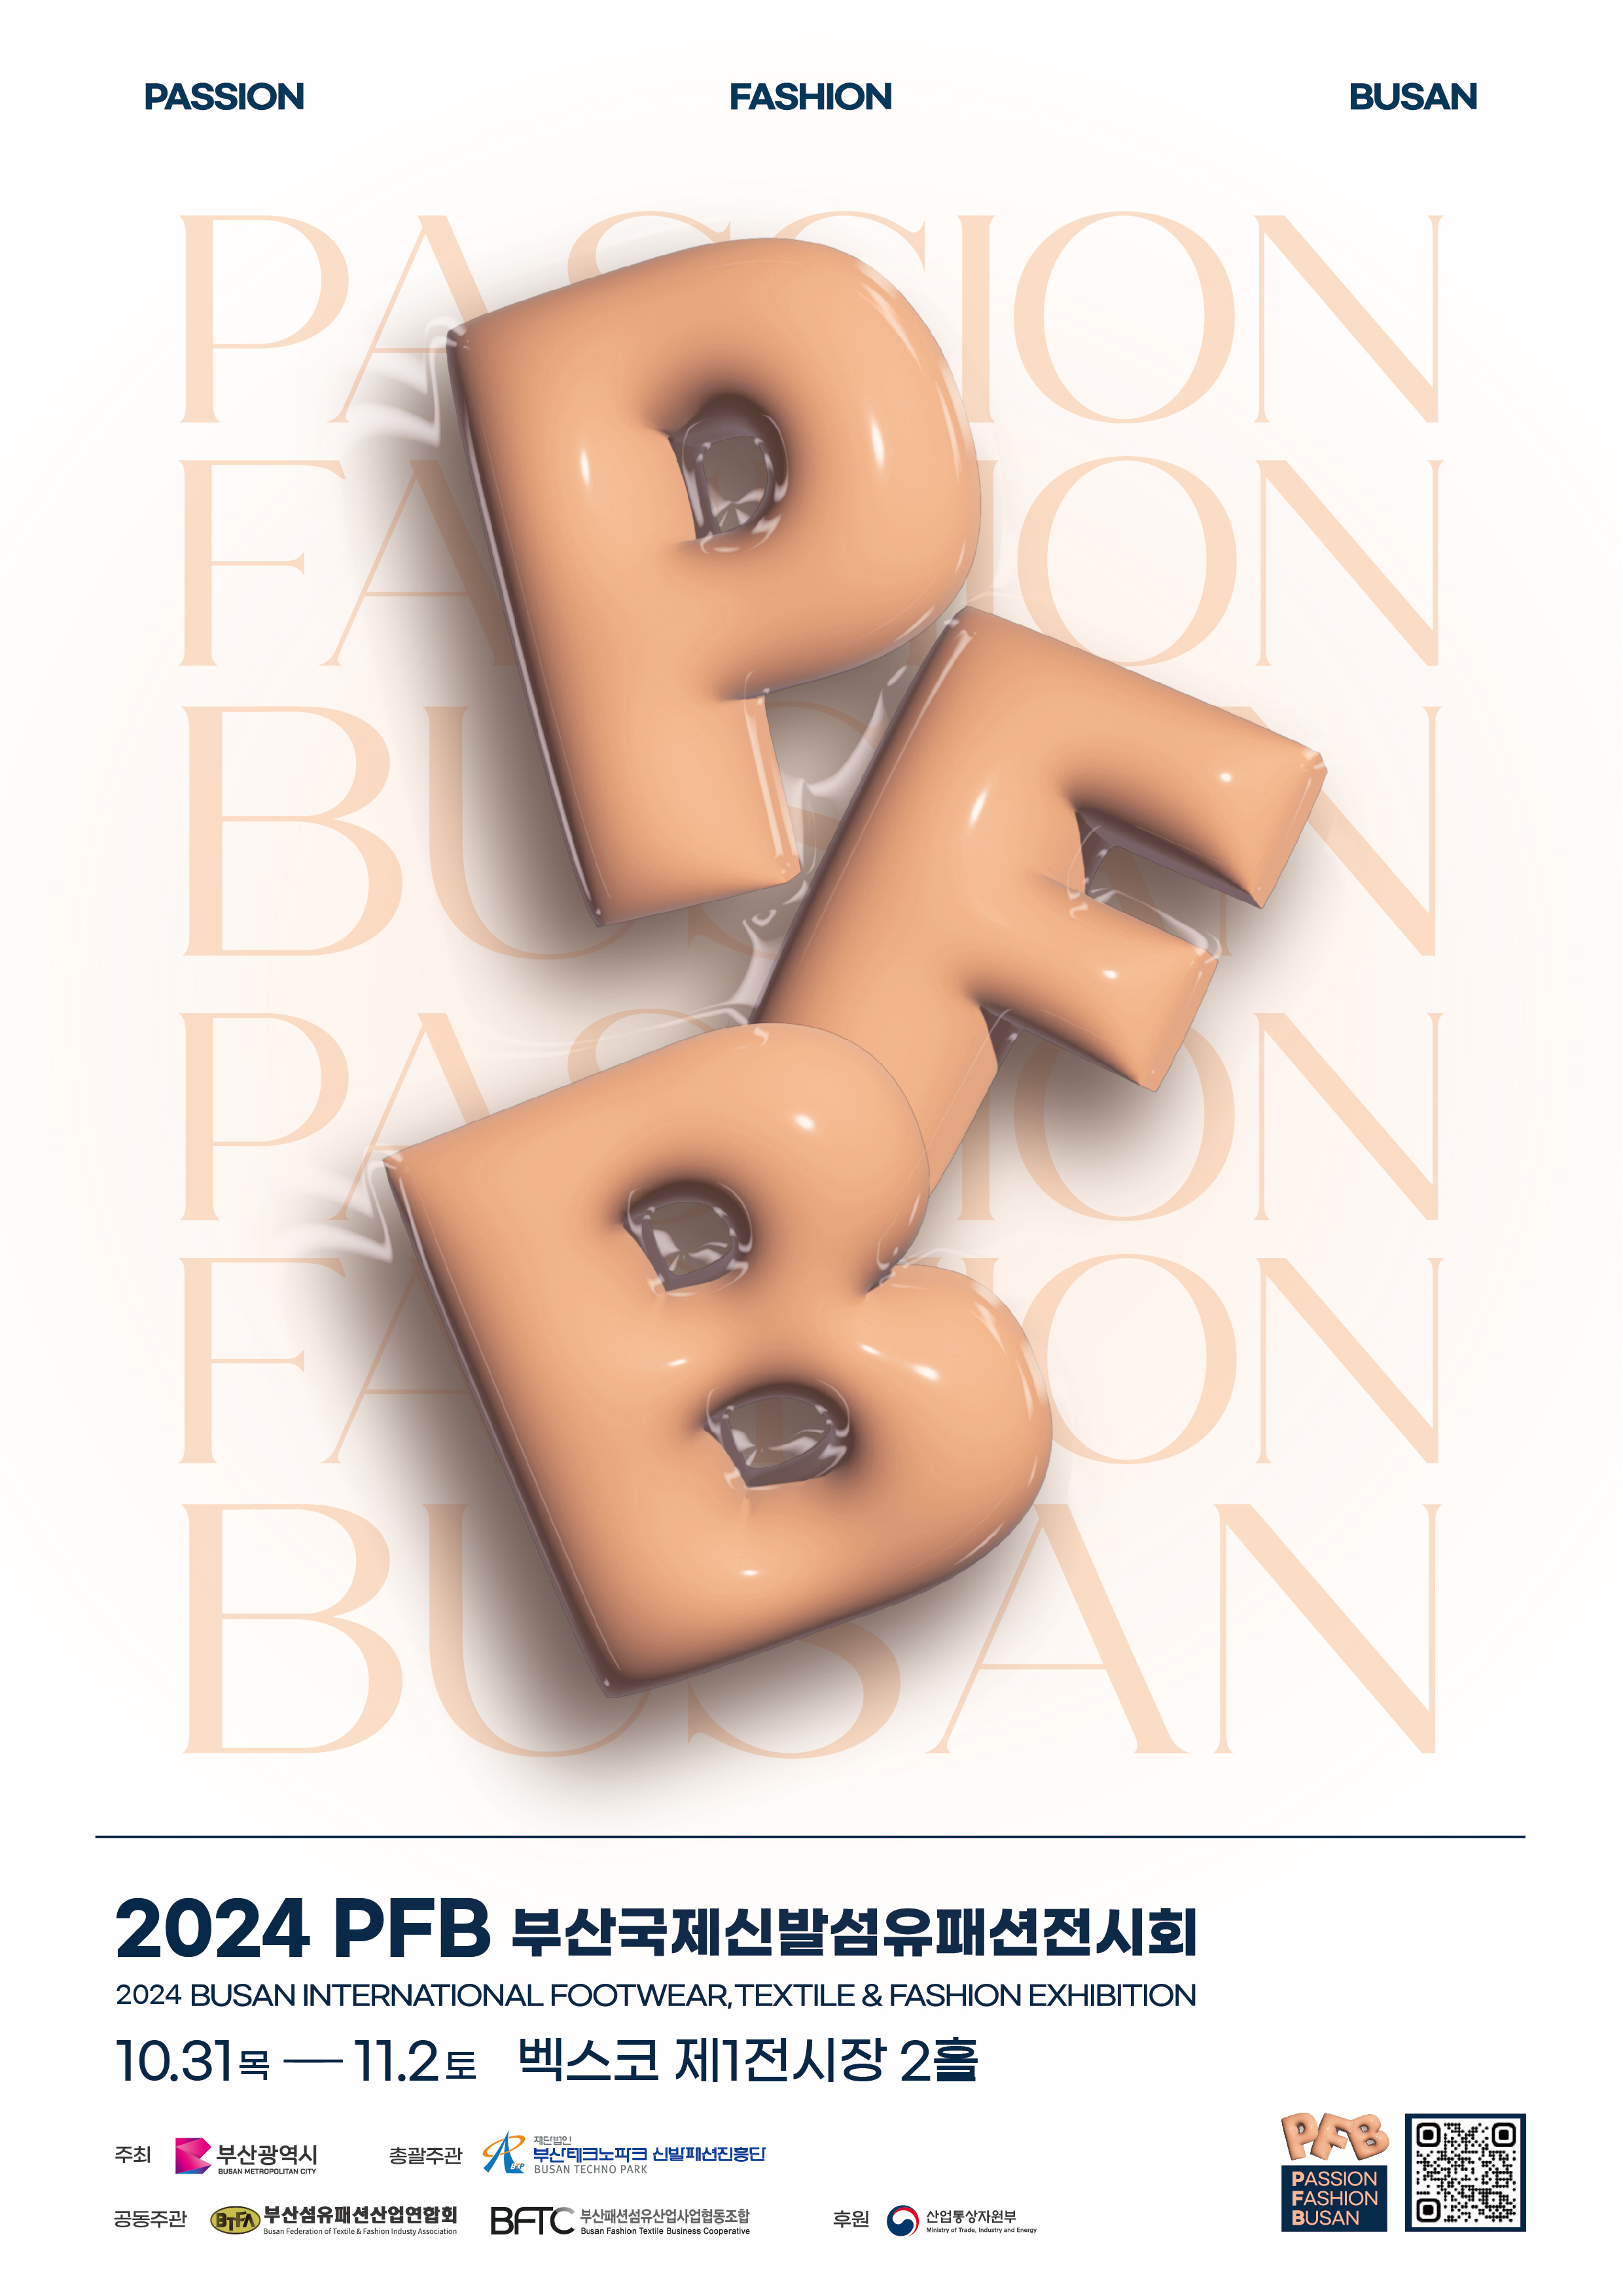 2024 PFB(釜山国際靴・繊維・ファッション展示会)